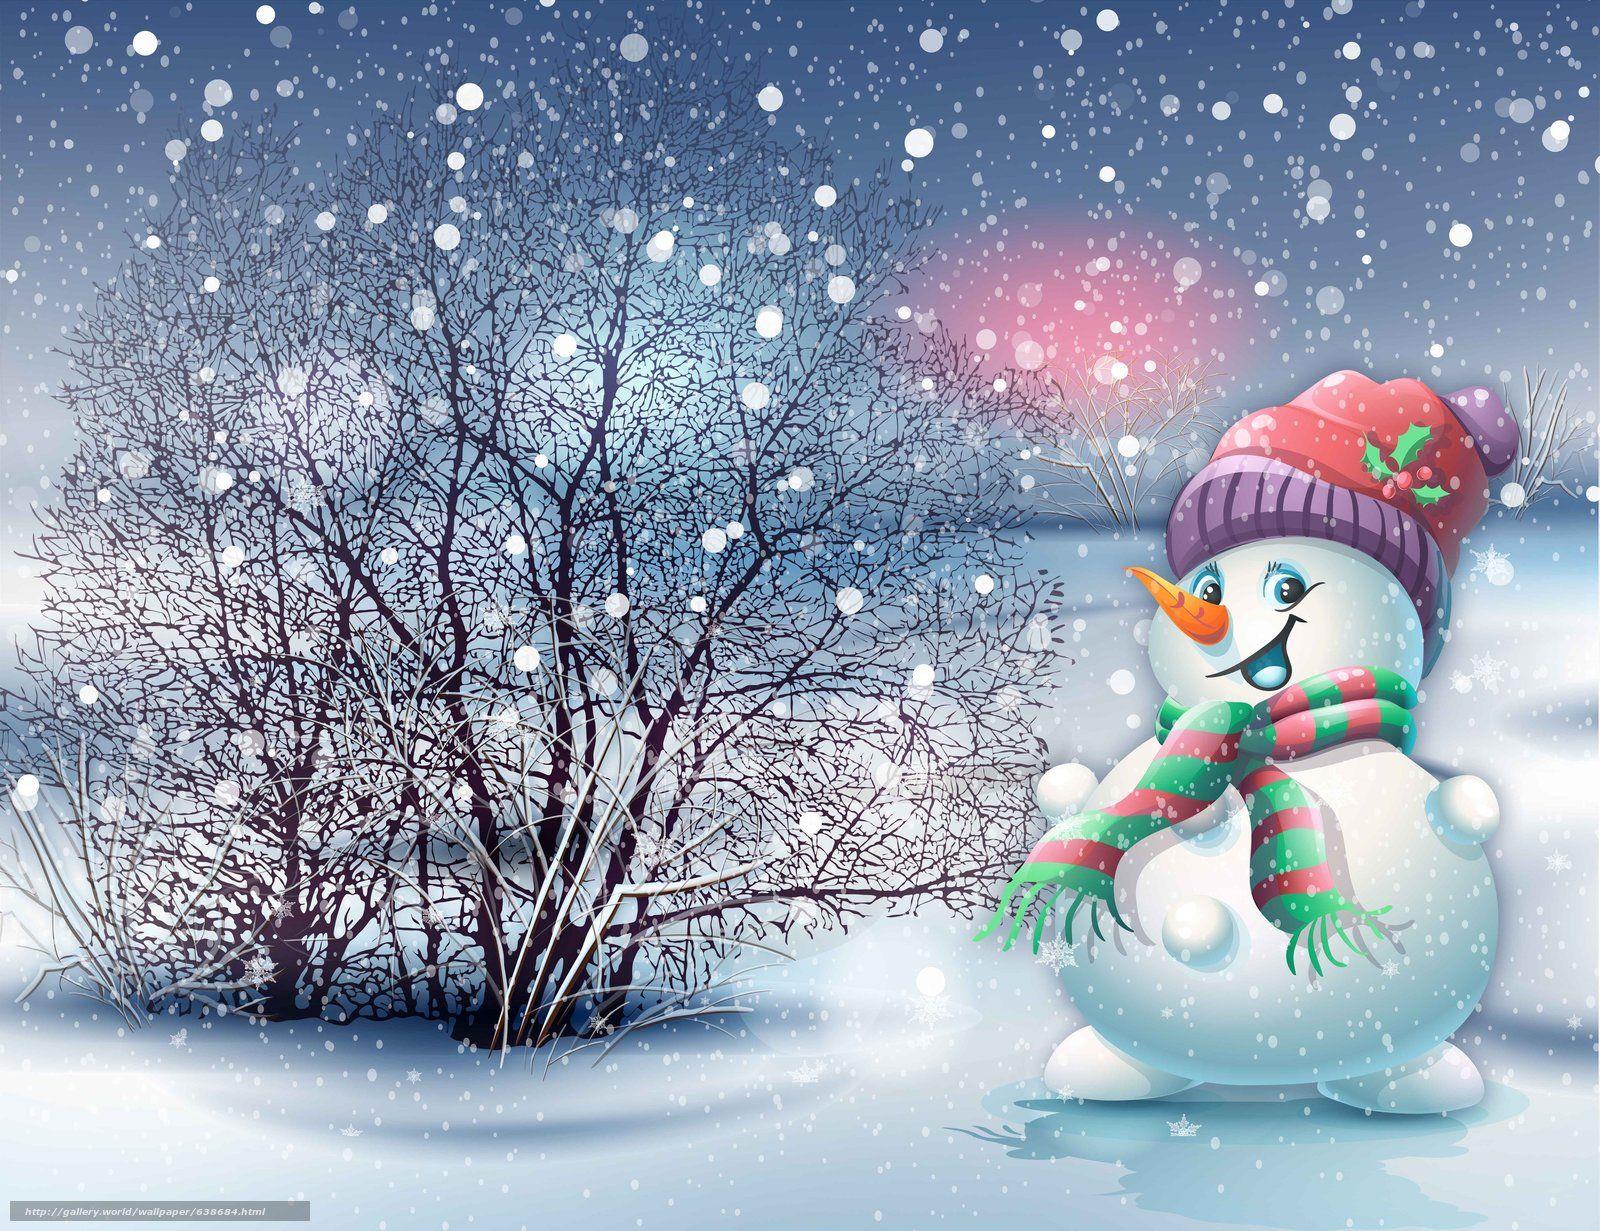 Immagini di Natale con la neve